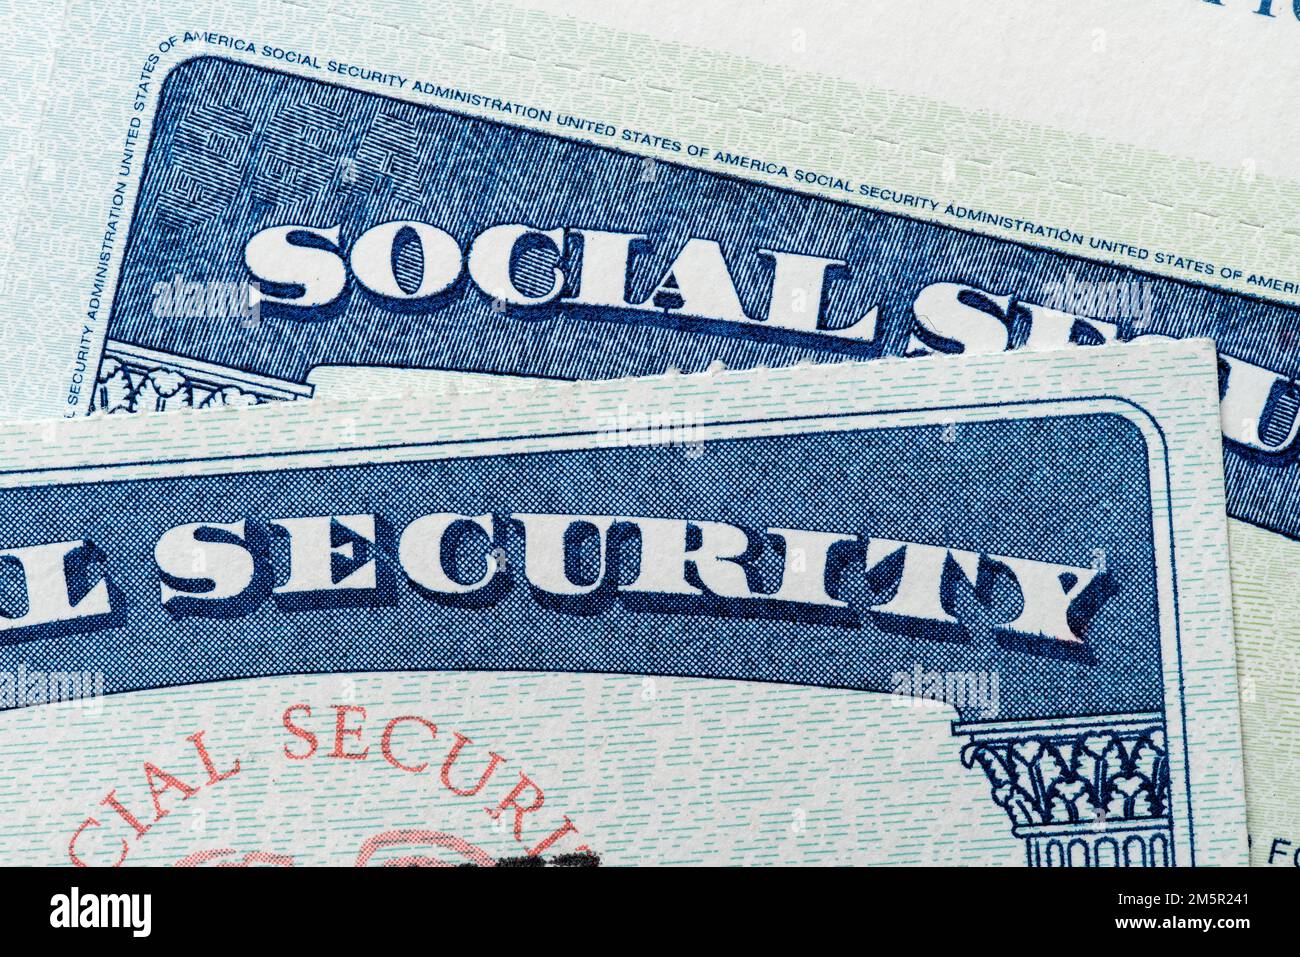 L'Amministrazione della previdenza sociale degli Stati Uniti rilascia un numero di previdenza sociale come documento di identificazione individuale, una carta di previdenza sociale. Foto Stock